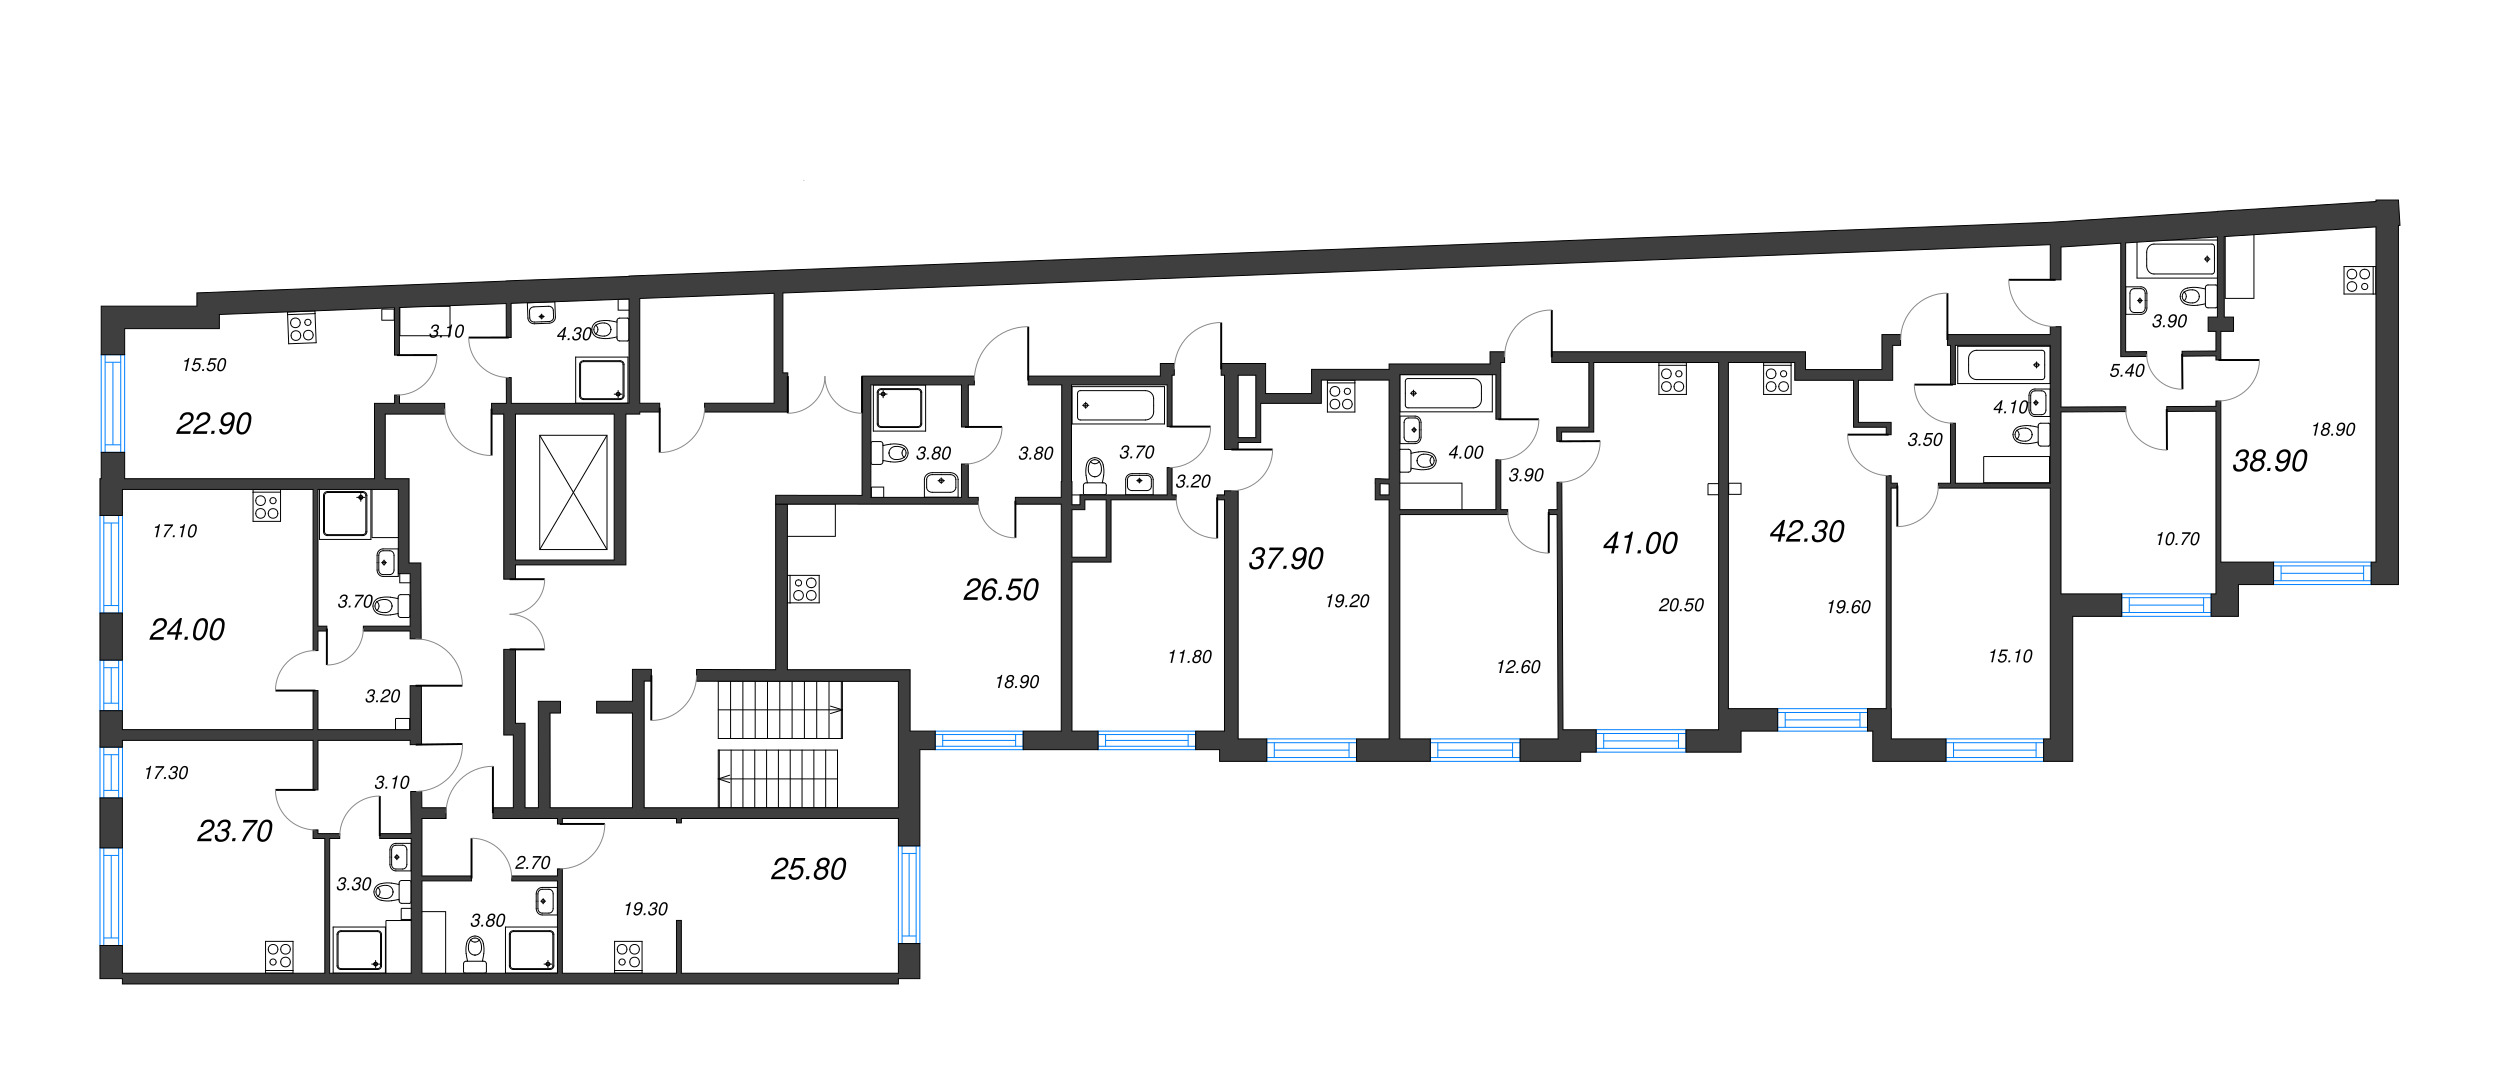 2-комнатная (Евро) квартира, 37.9 м² в ЖК "Измайловский" - планировка этажа